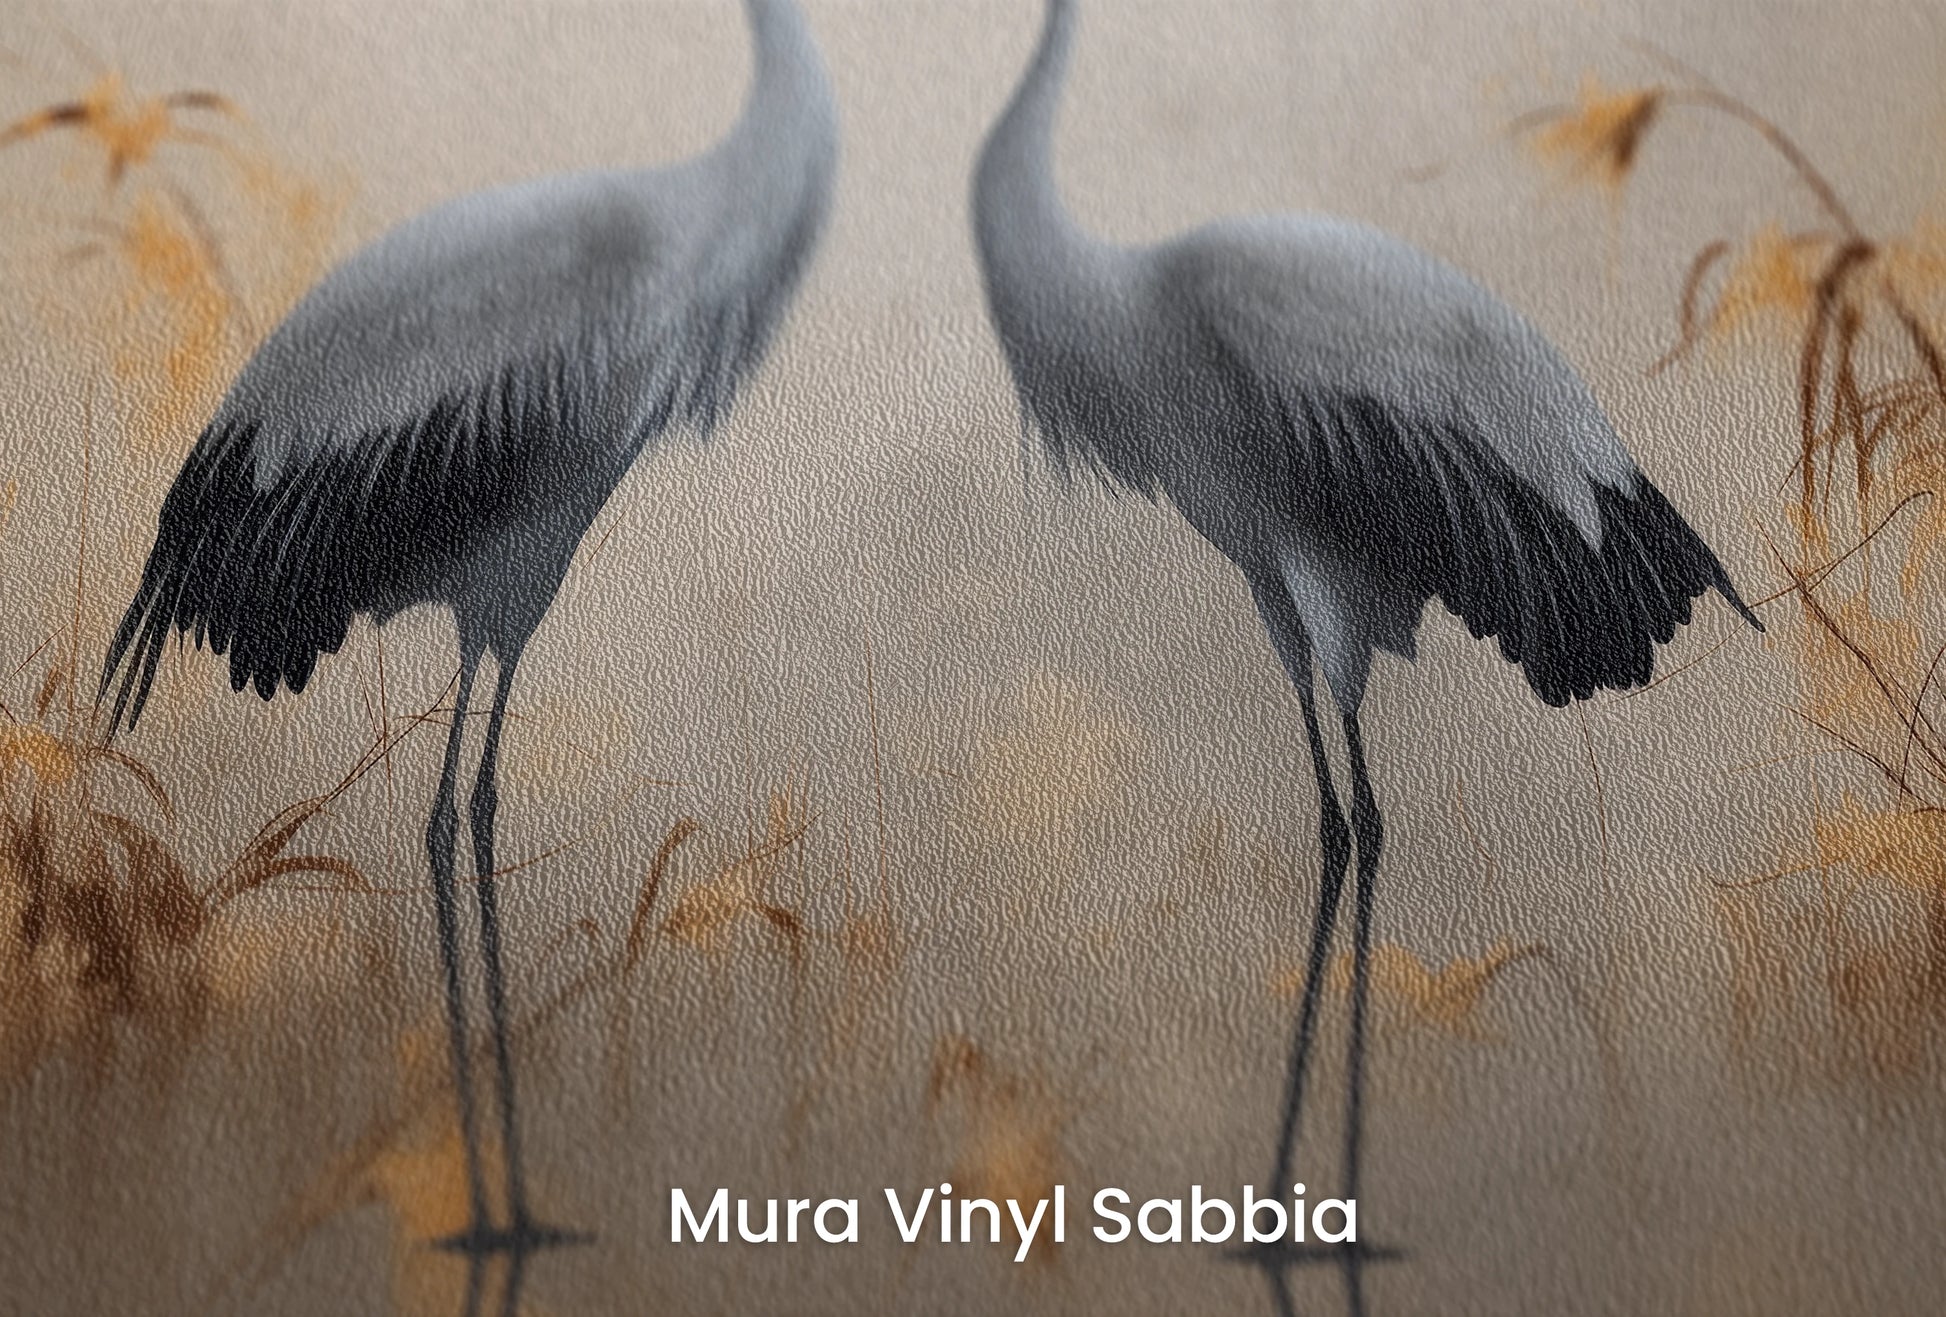 Zbliżenie na artystyczną fototapetę o nazwie Misty Silhouettes na podłożu Mura Vinyl Sabbia struktura grubego ziarna piasku.